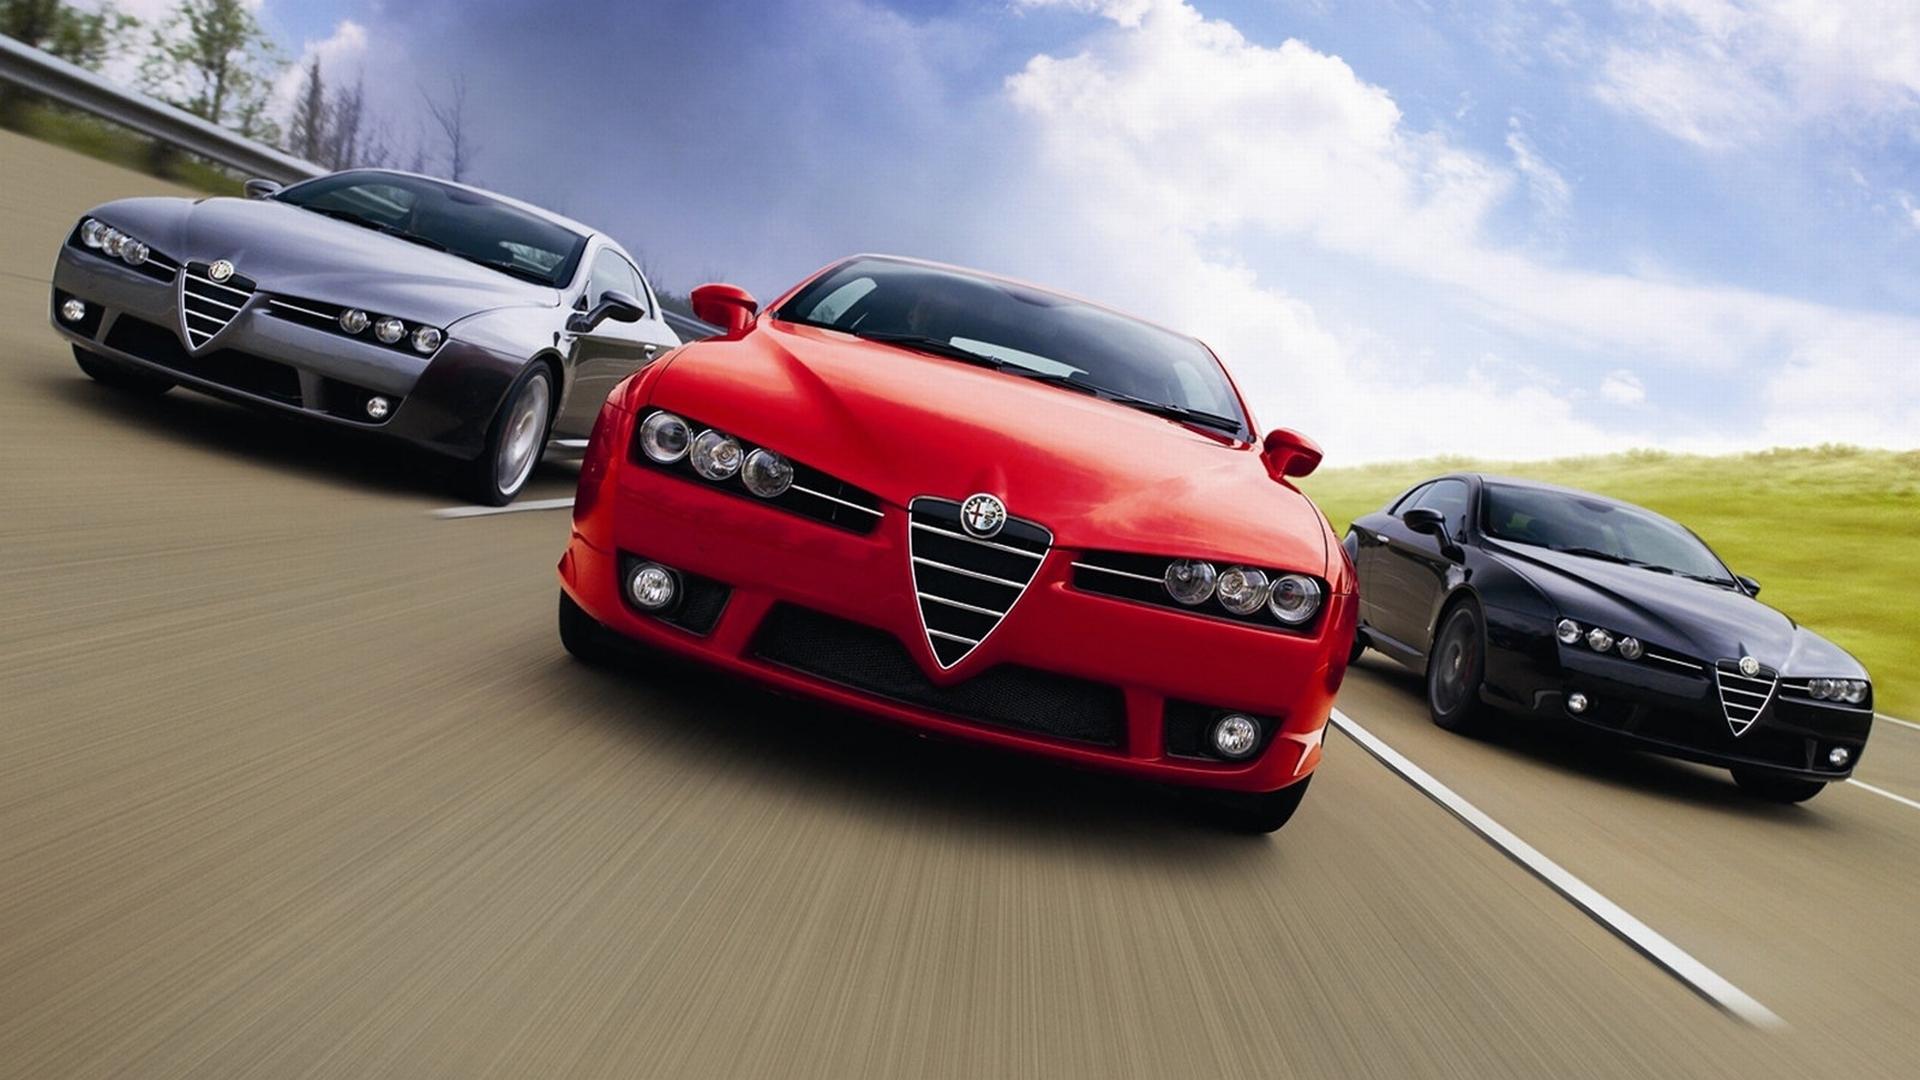 Alfa Romeo Brera at 1600 x 1200 size wallpapers HD quality